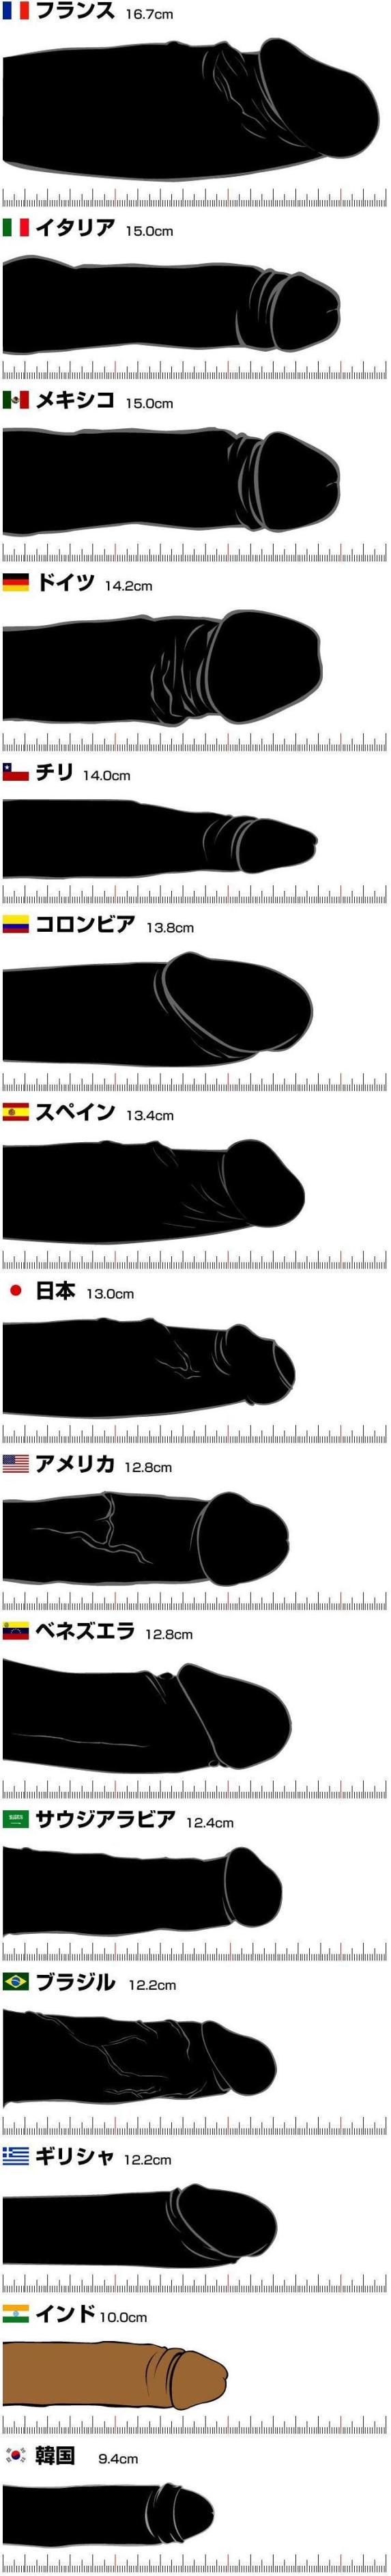 画像：国別ペニスサイズ比較表 [エロ]